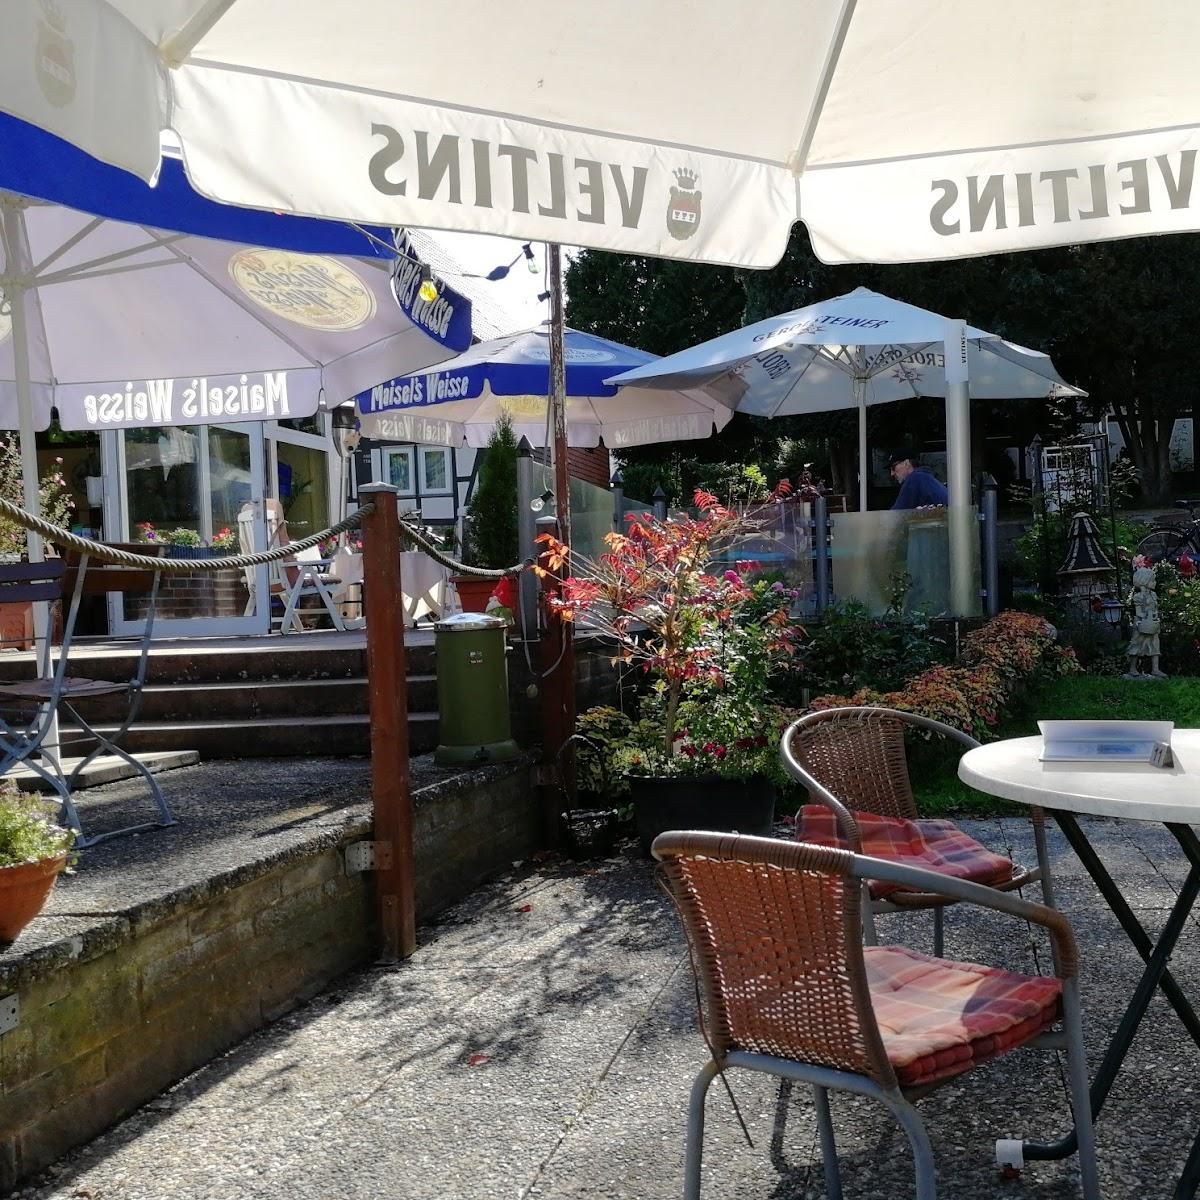 Restaurant "Cafe Teria" in Reinhardshagen